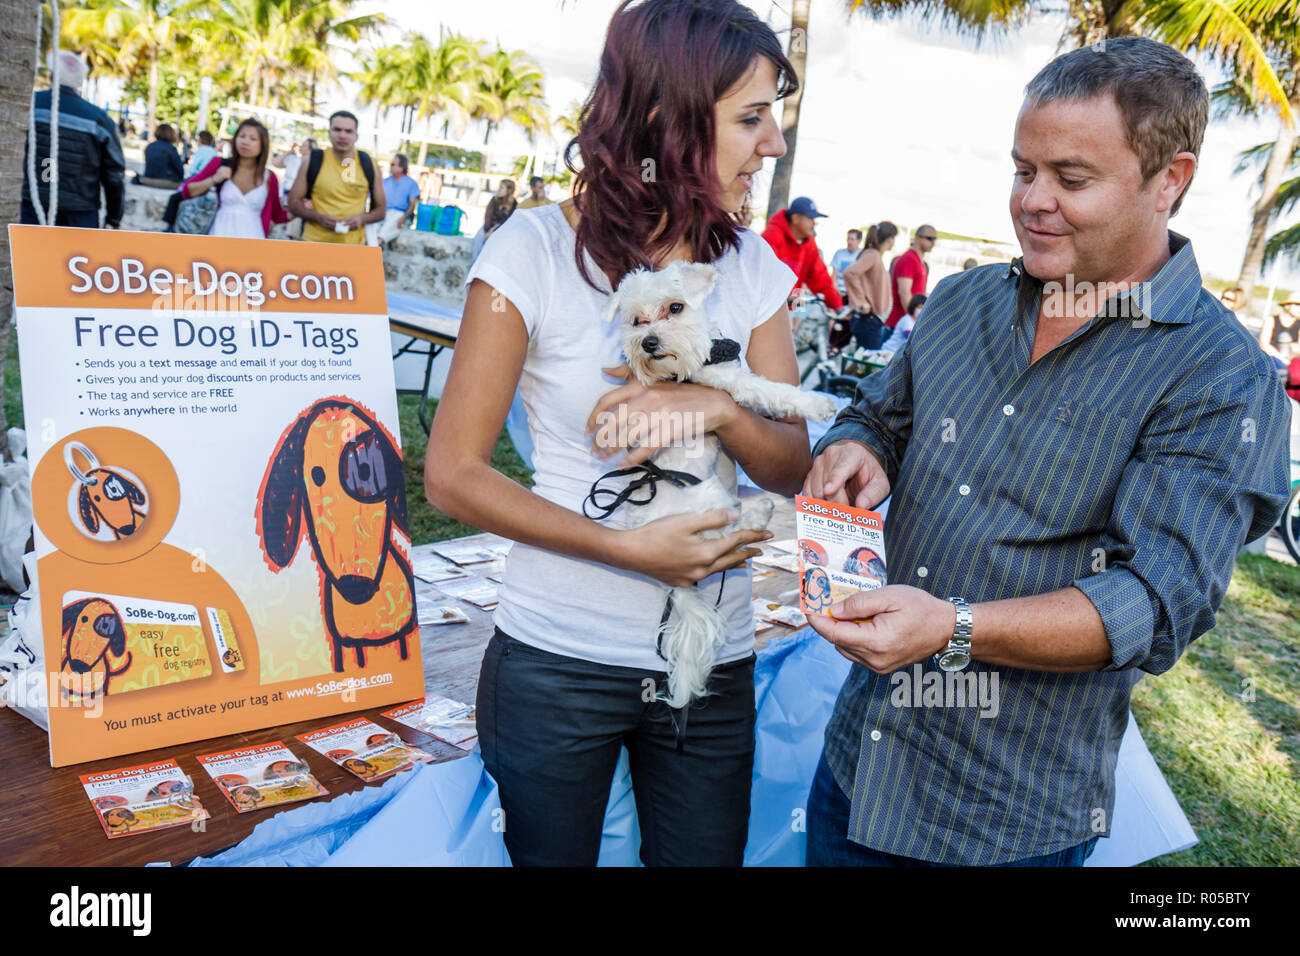 Miami Beach Florida,Ocean Drive,Art Deco Weekend,architettura festival so be dog.com,free ID tag,servizio di registrazione animali domestici,proteggere,trovare,donna donne, Foto Stock